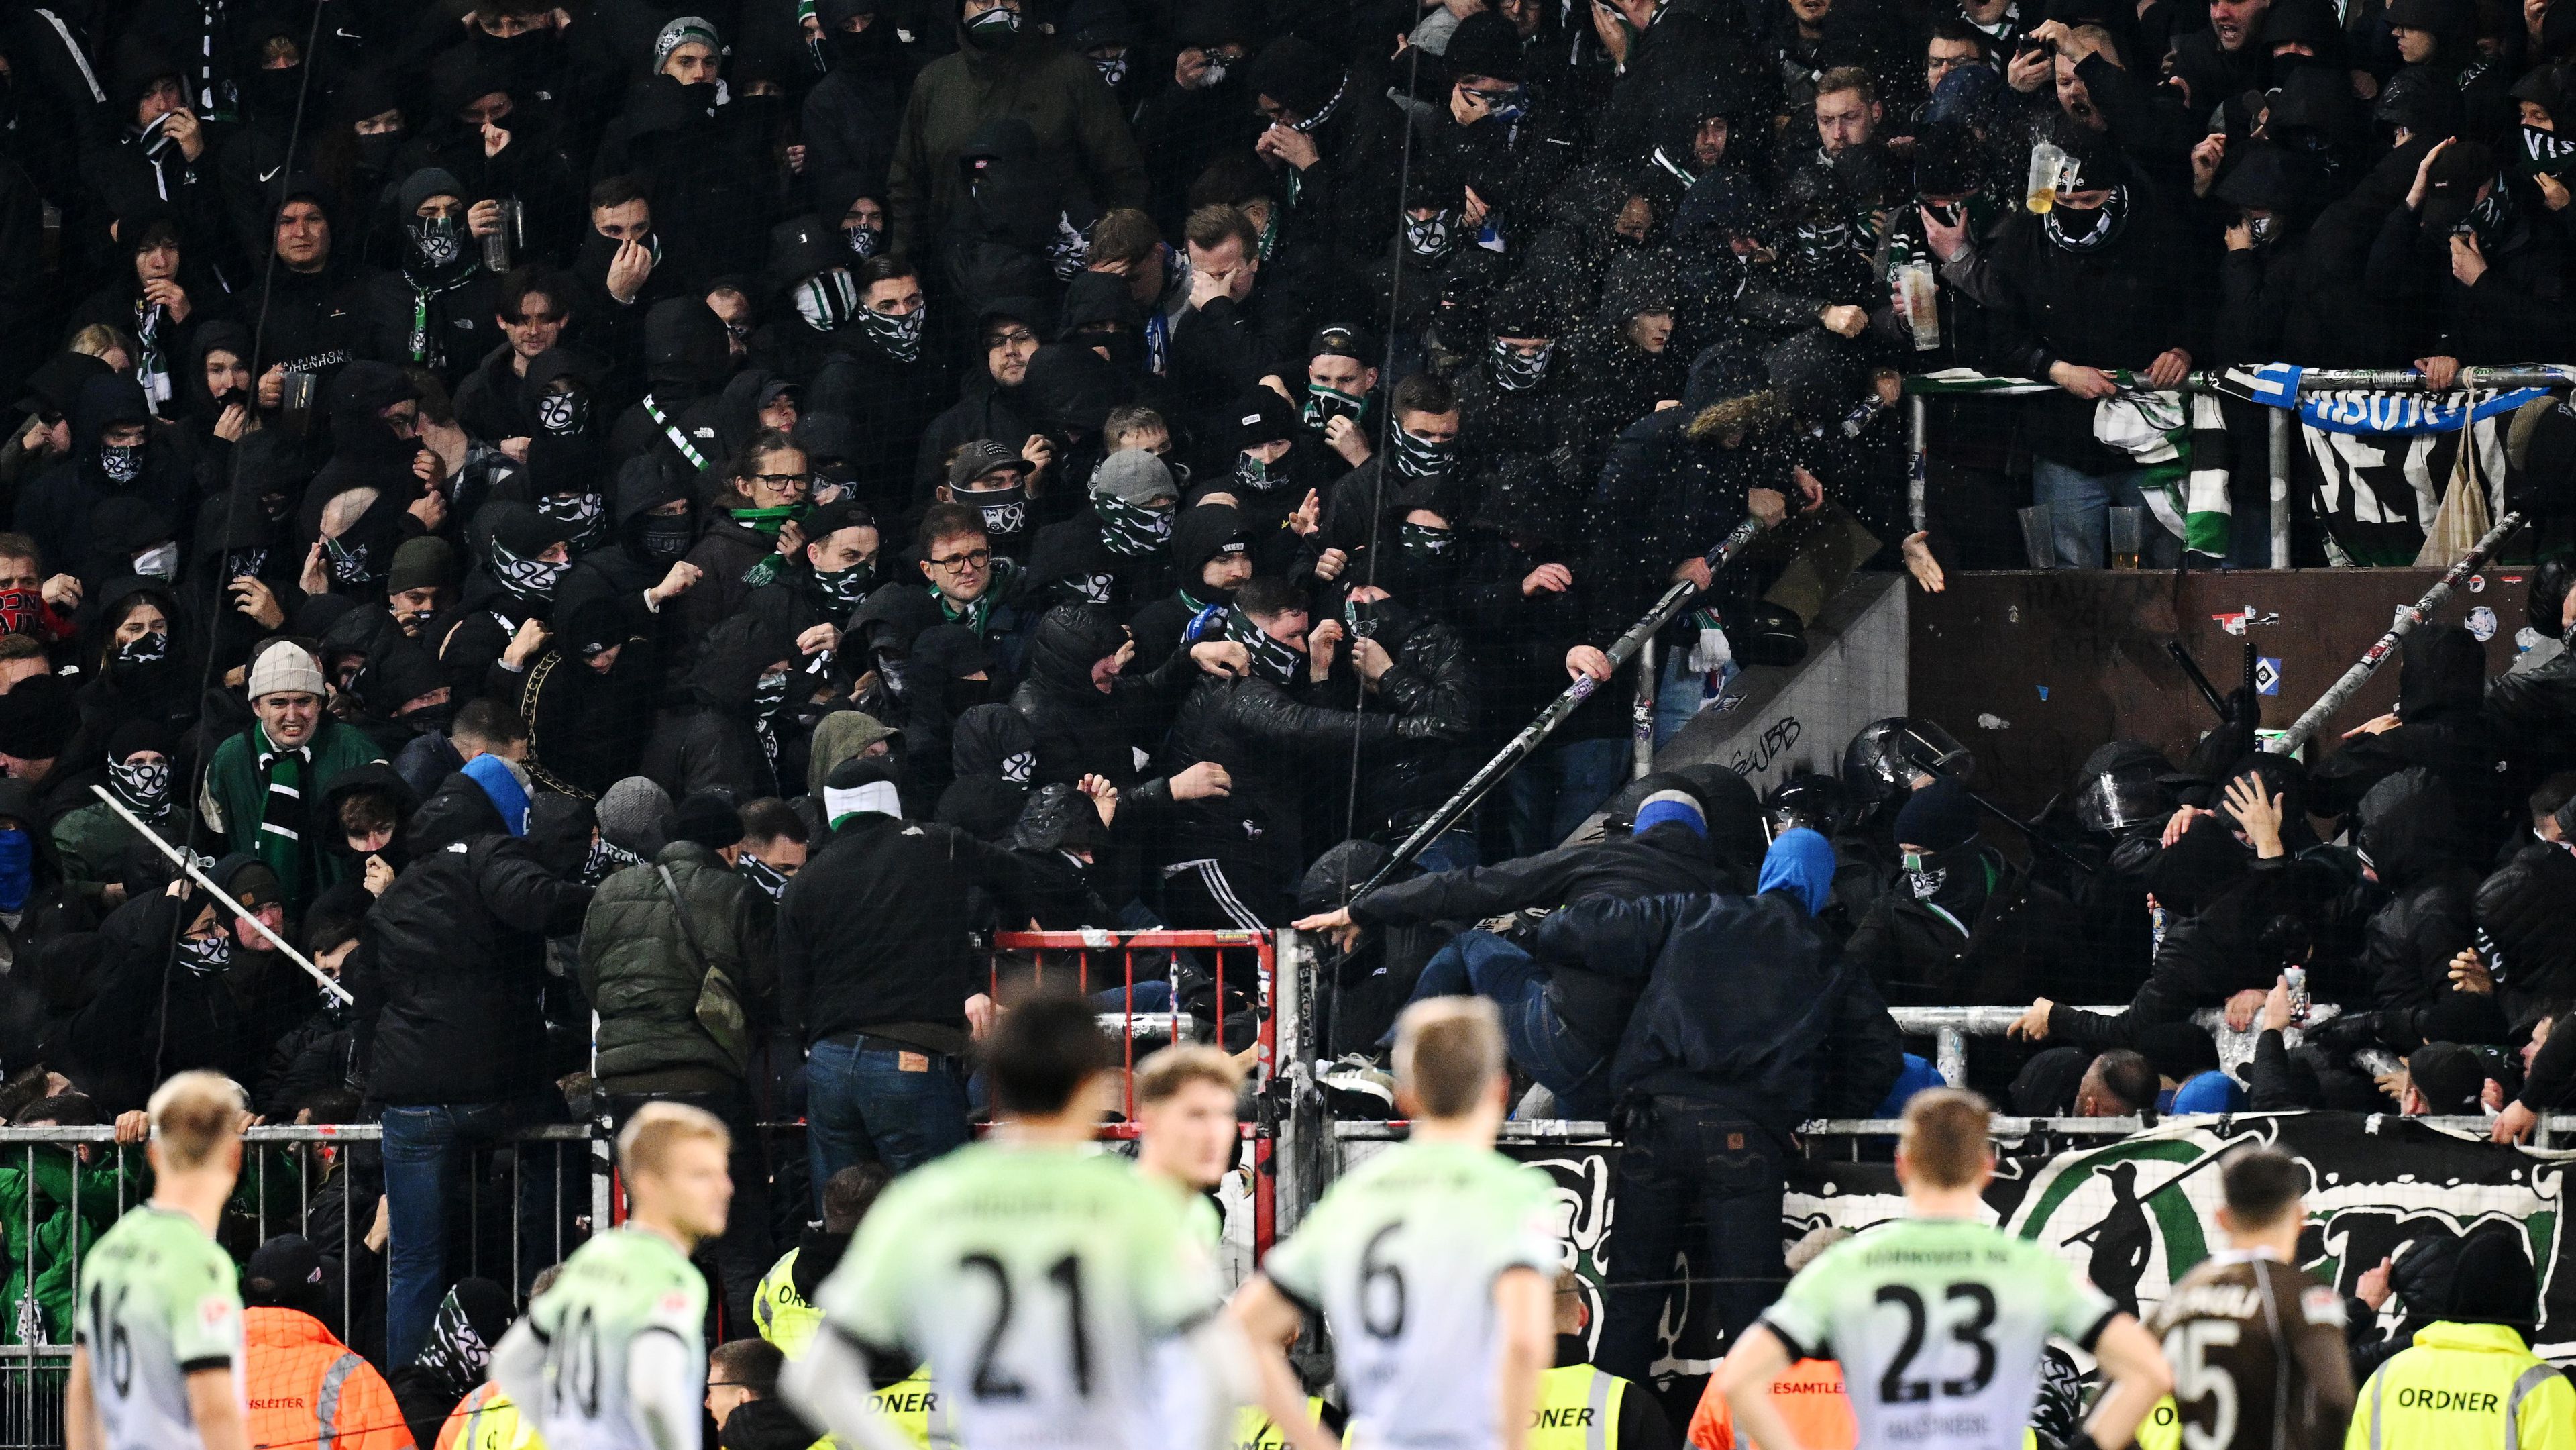 A hannoveri játékosok csak nézték, ahogy a szurkolóik a rendőrökkel hadakoznak (Fotó: Getty Images)